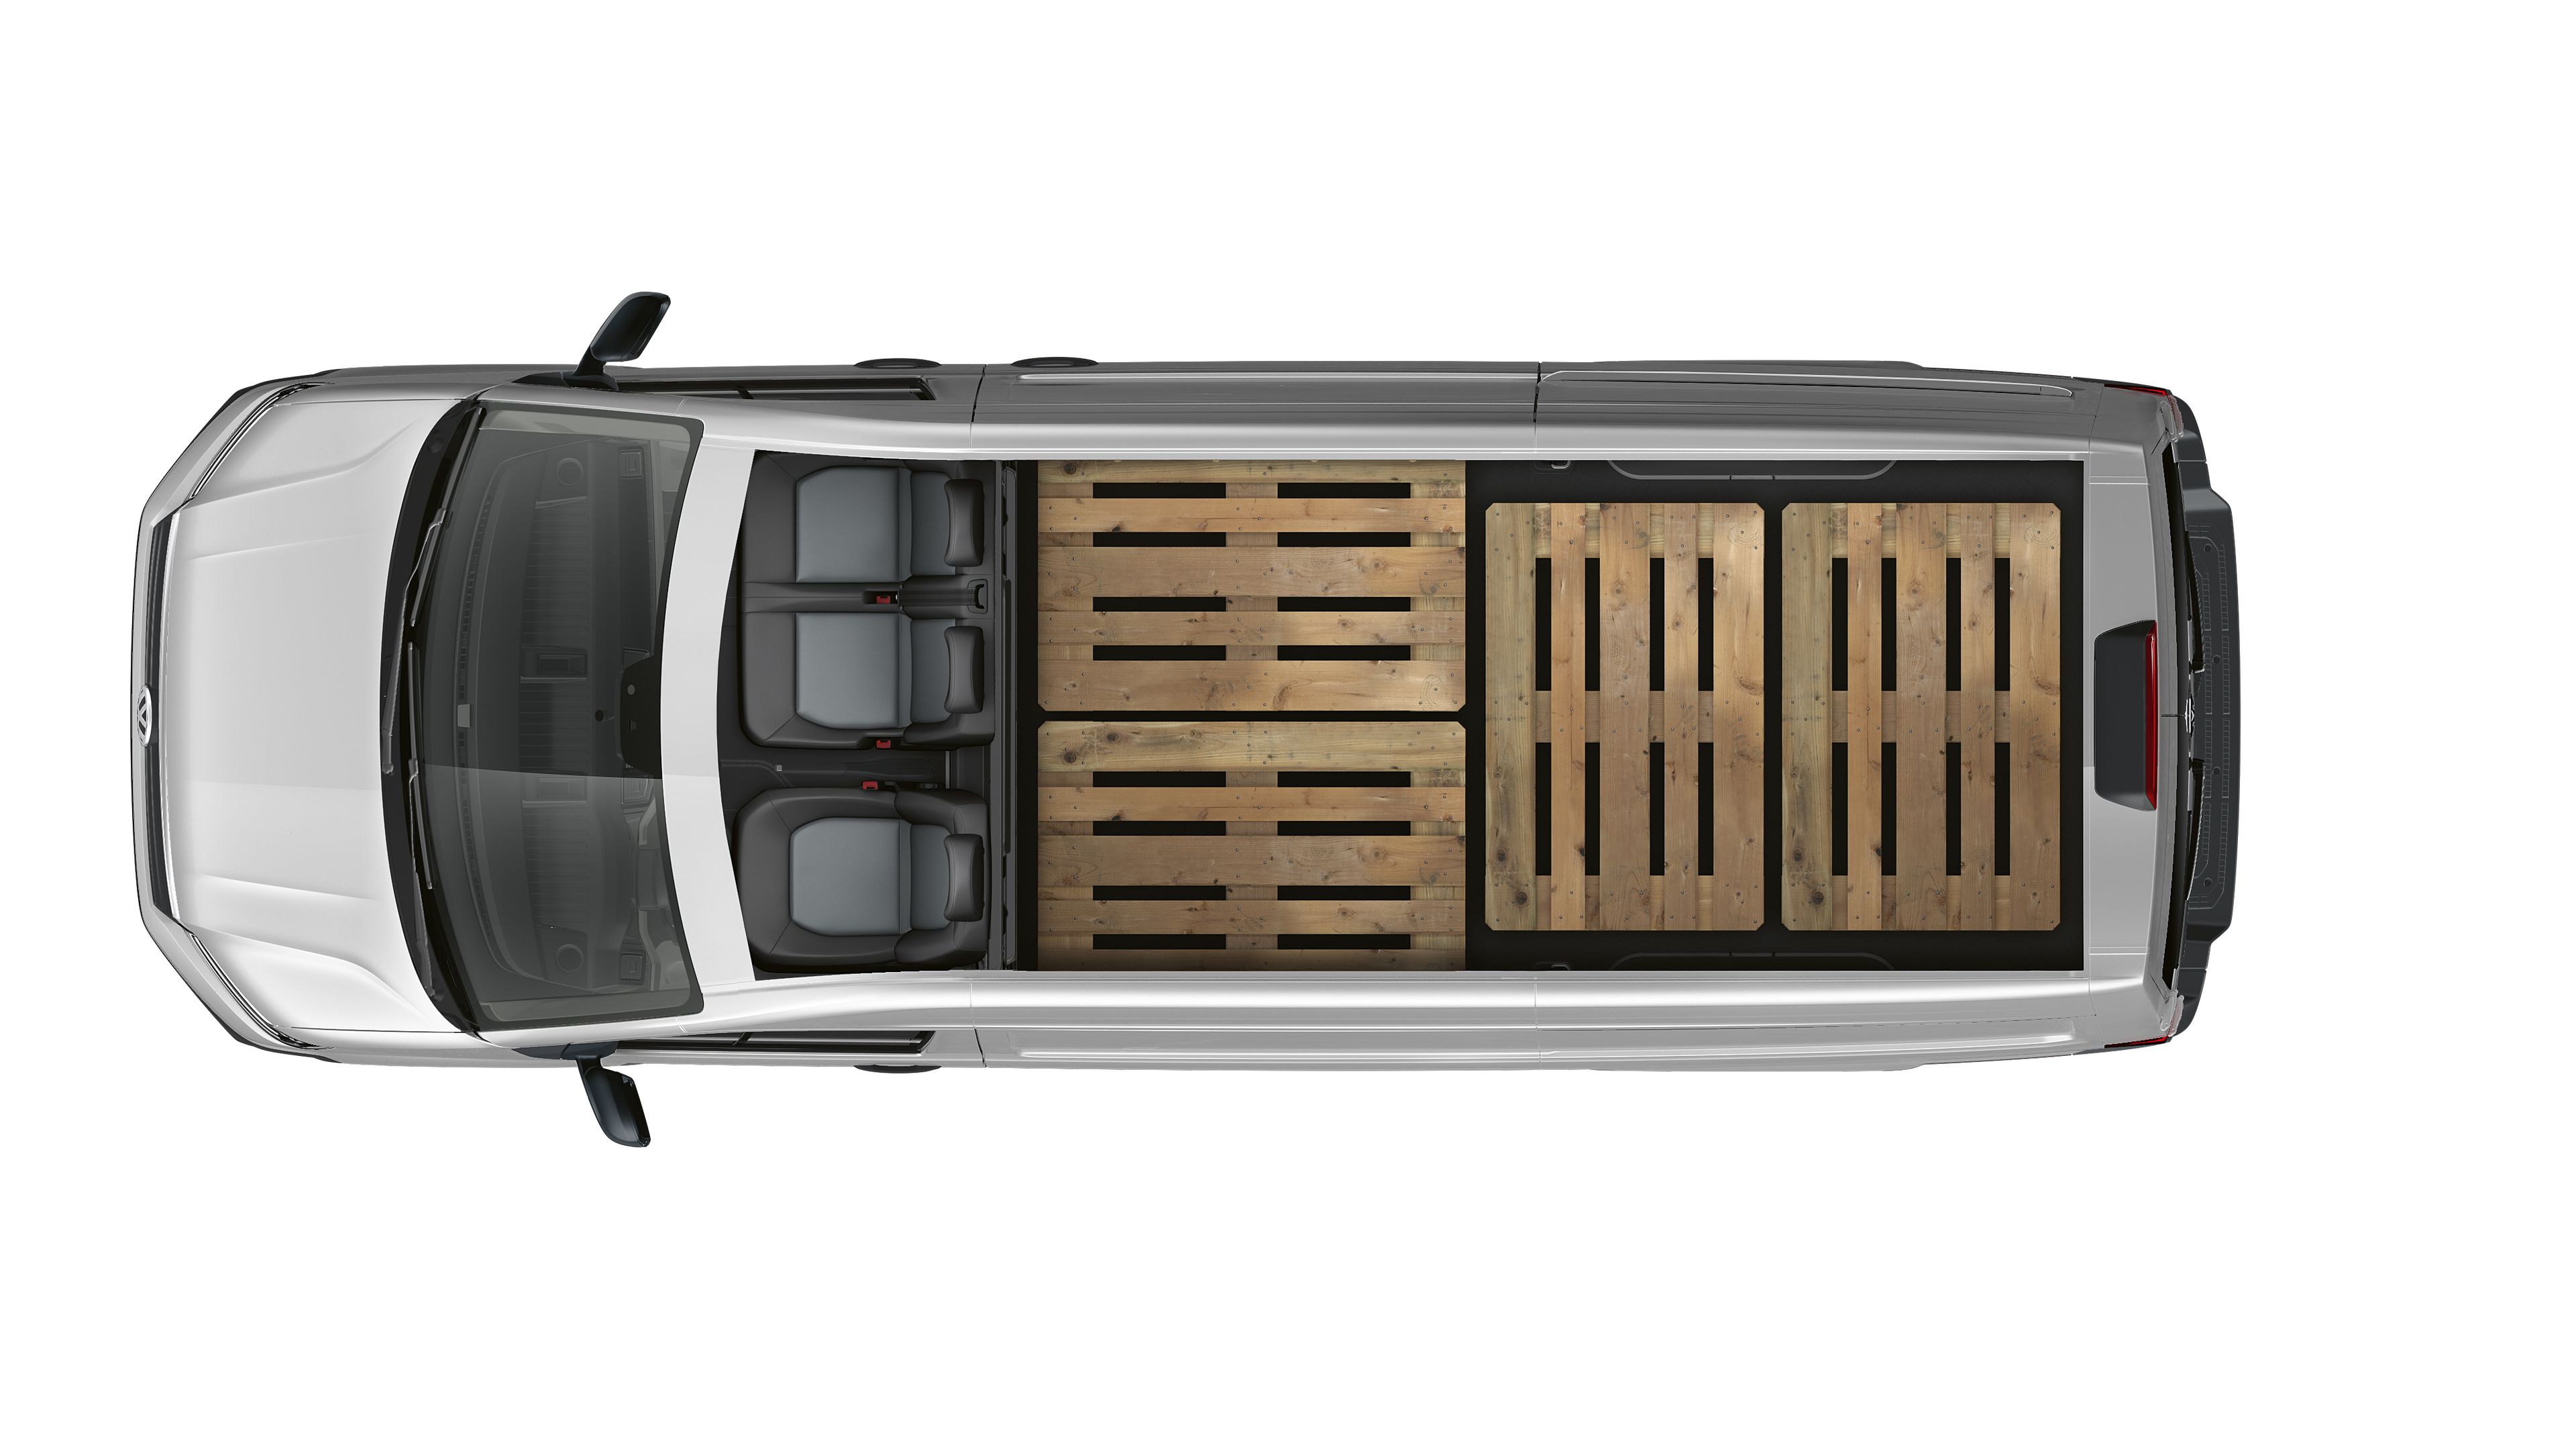 Abbildung eines VW Crafter Kastenwagens von oben zu sehen mit 4 Europaletten